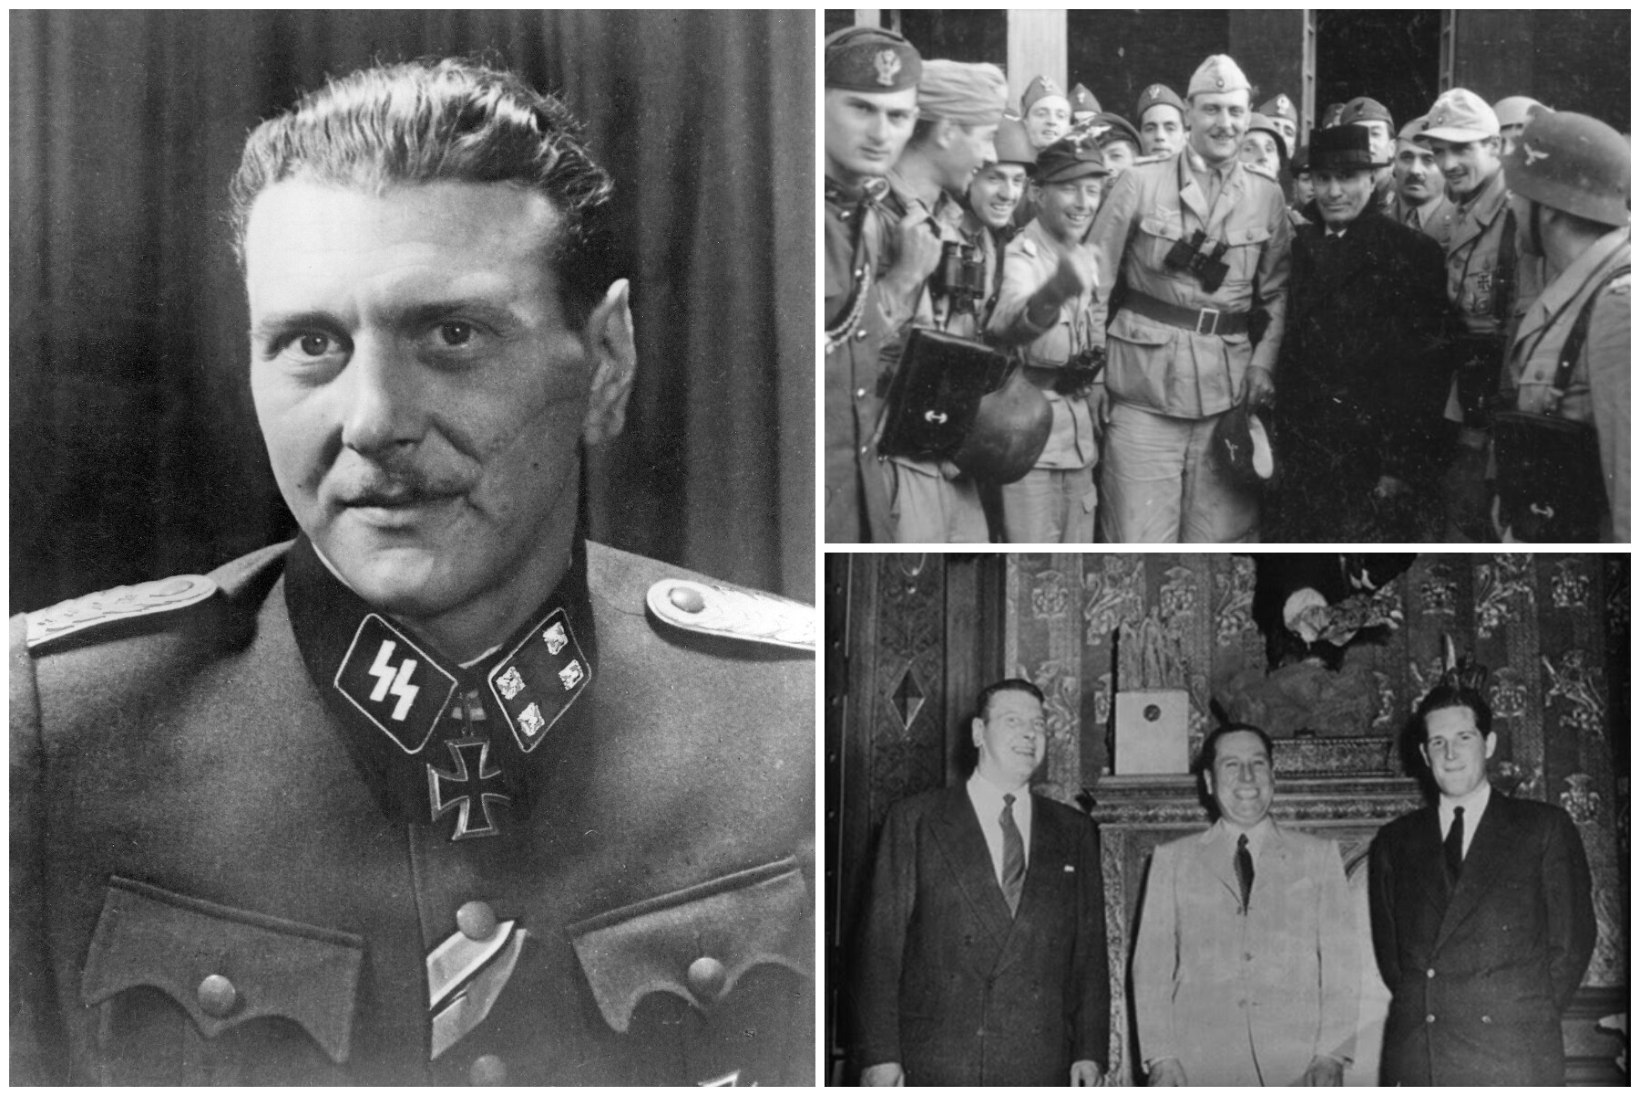 ARMINÄGU OTTO: Mussolini päästmisoperatsiooni juhtinud nats jälestas juute, ent töötas pärast sõda Iisraeli luureteenistuses palgamõrtsukana